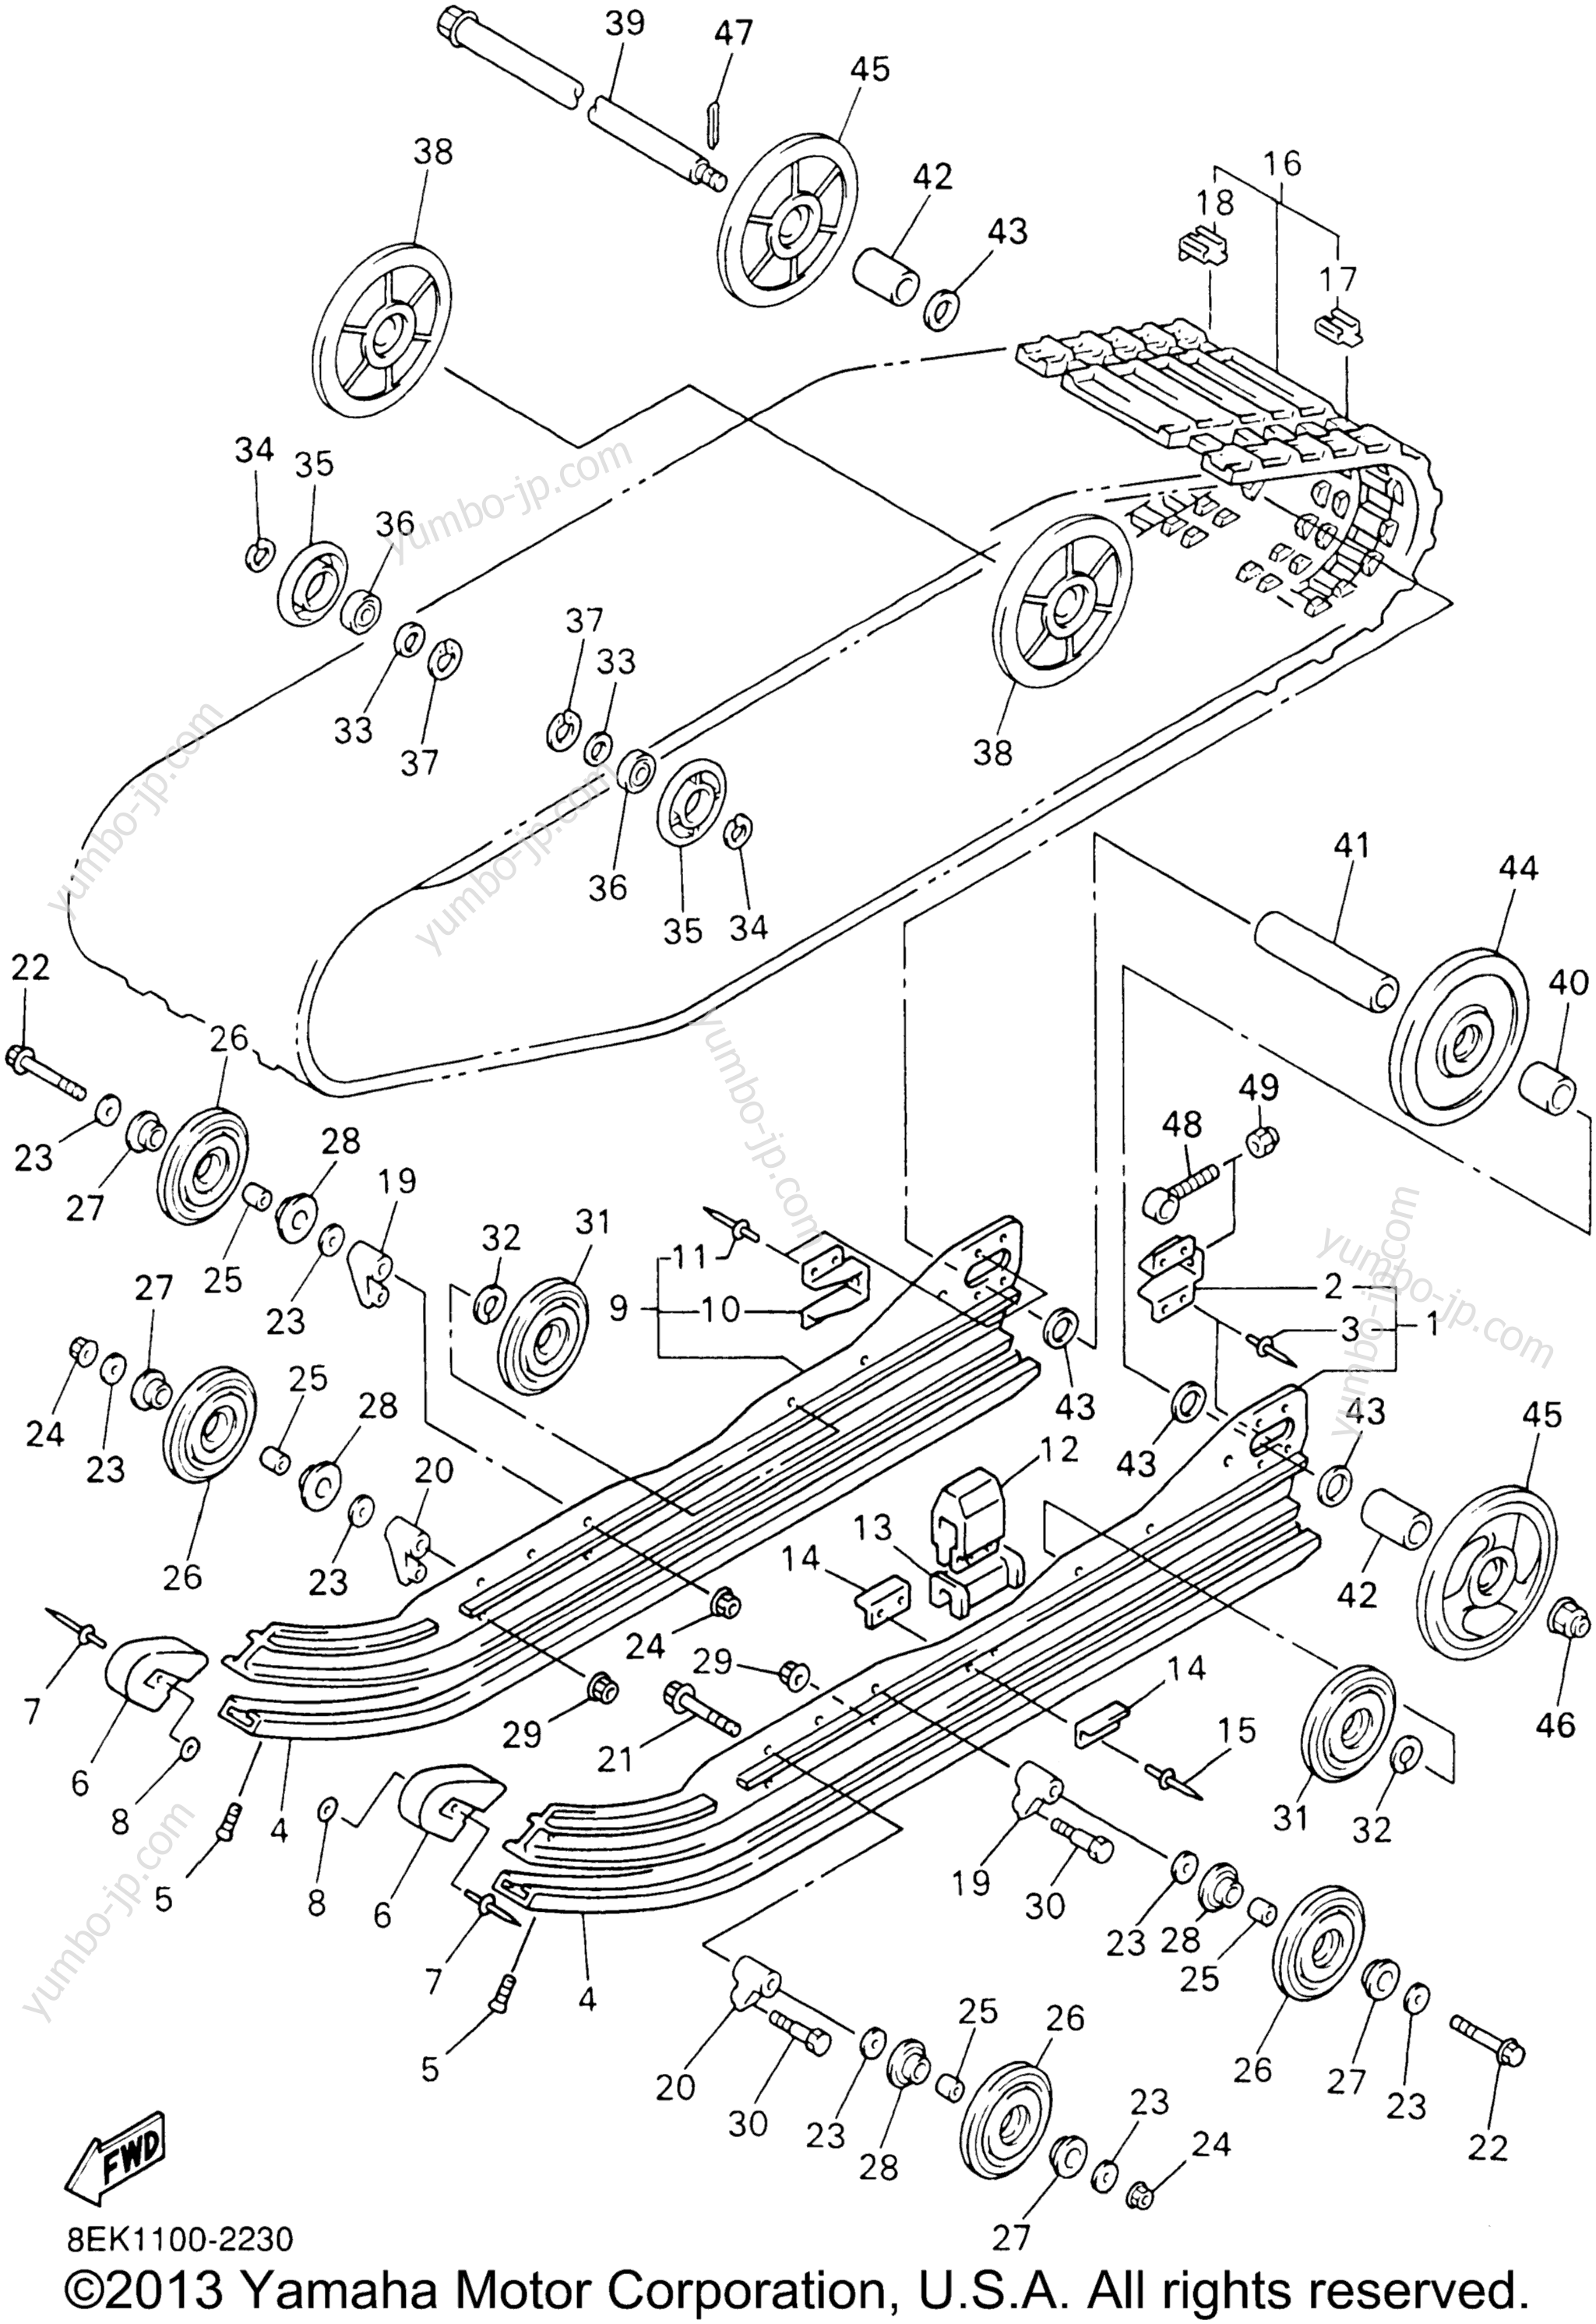 Track Suspension 1 for snowmobiles YAMAHA SXVIPER ER (ELEC START) (SXV700ERG) 2002 year